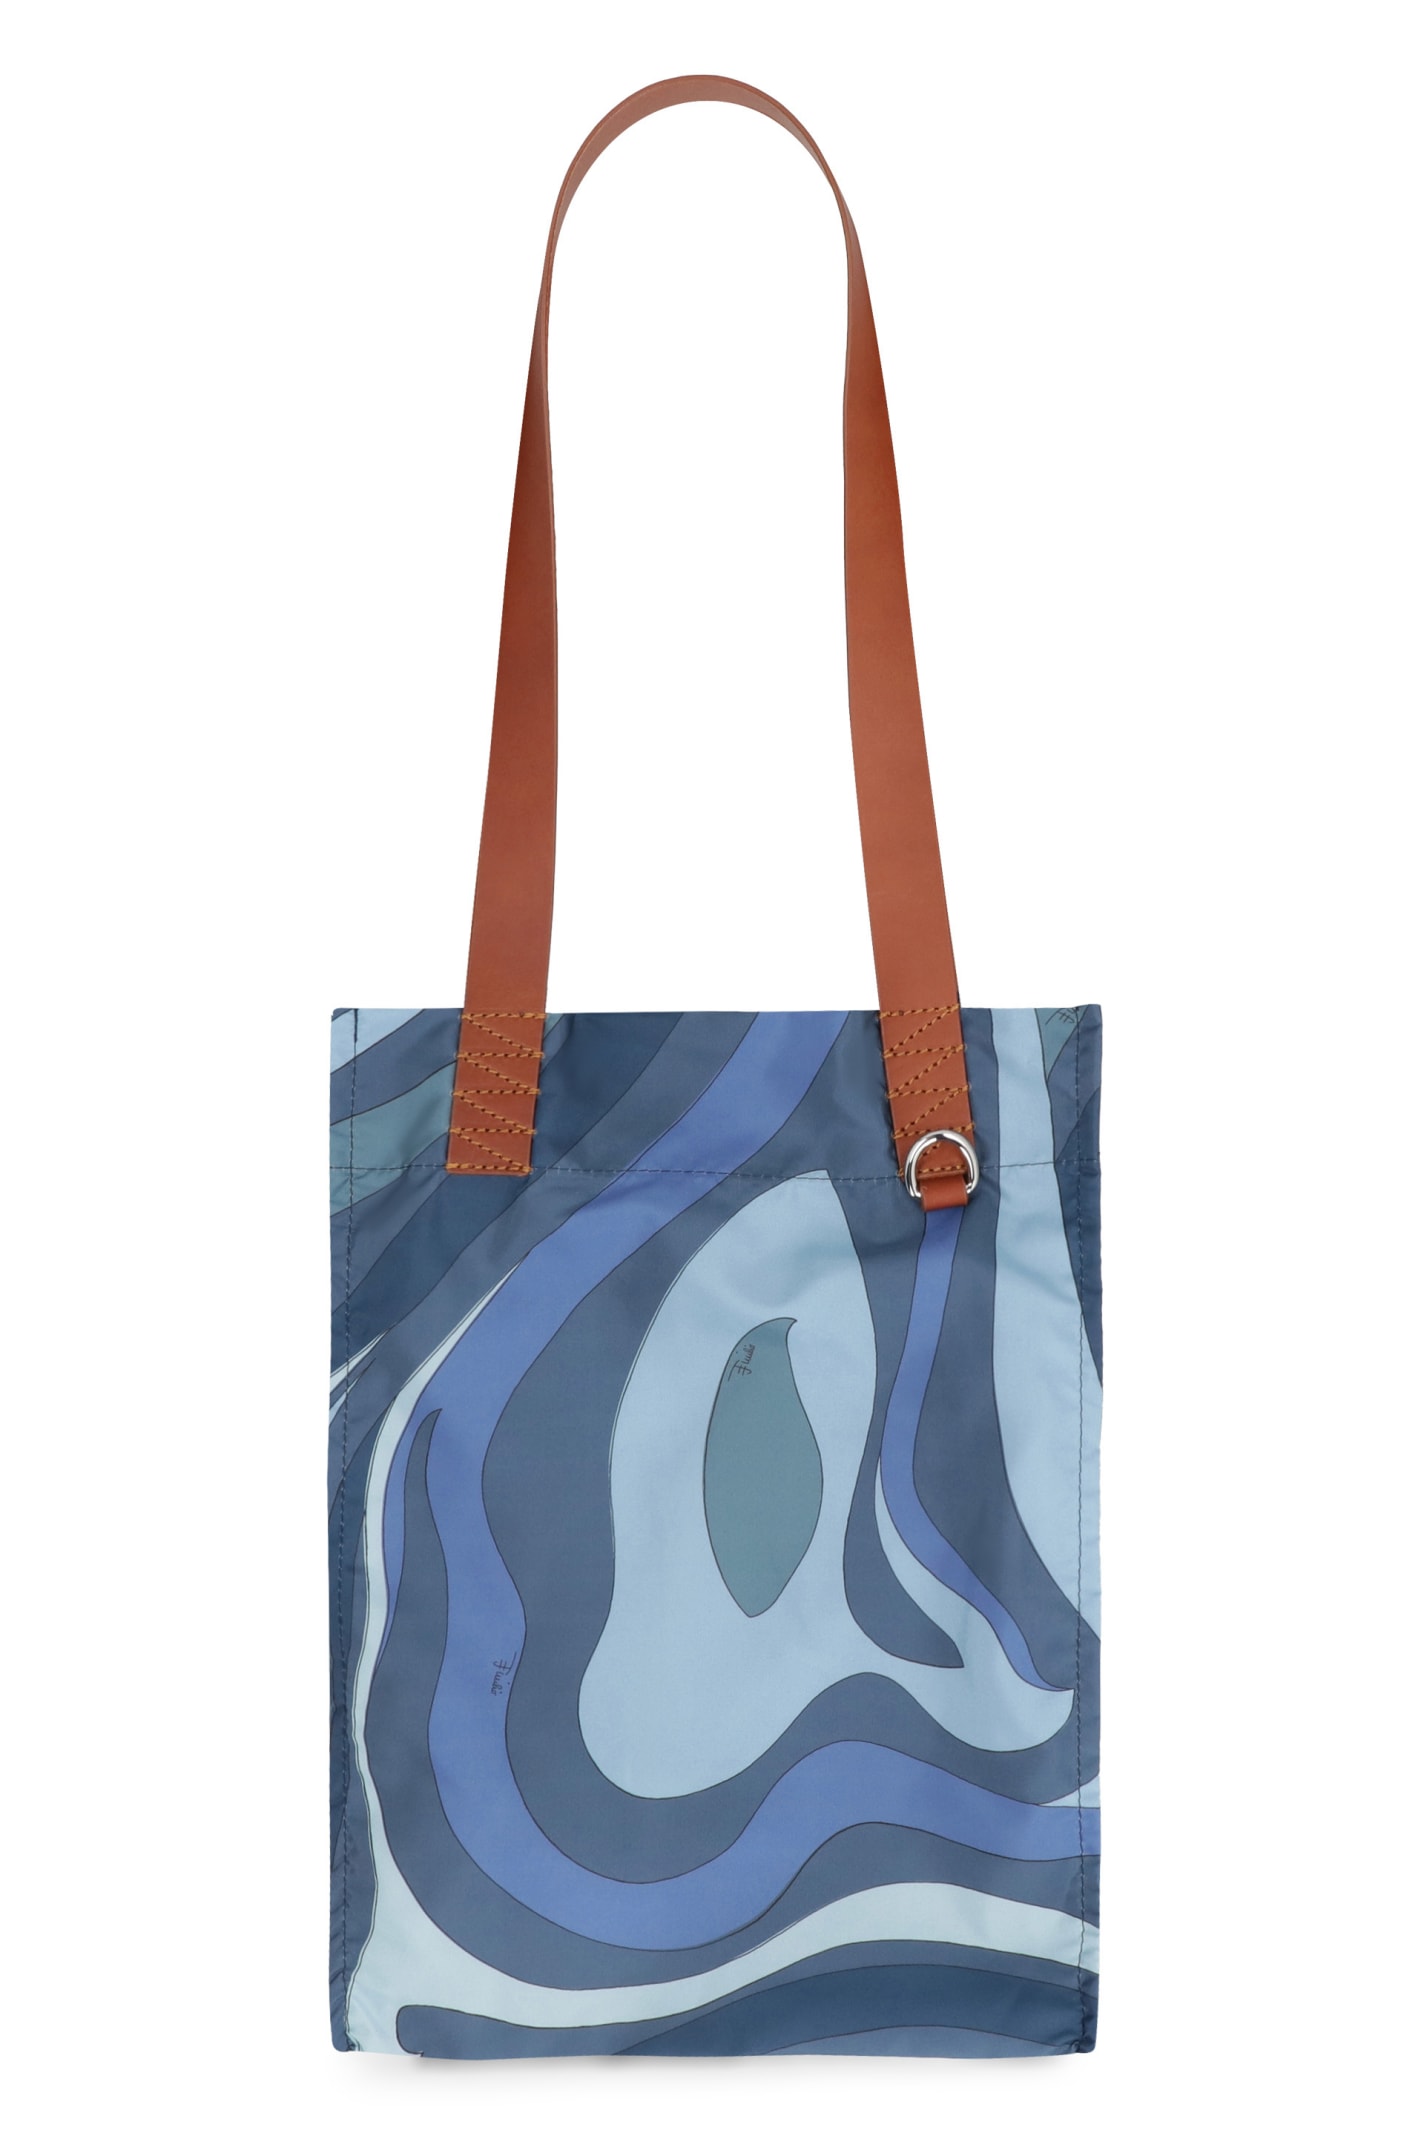 Emilio Pucci Printed Tote Bag In Blue